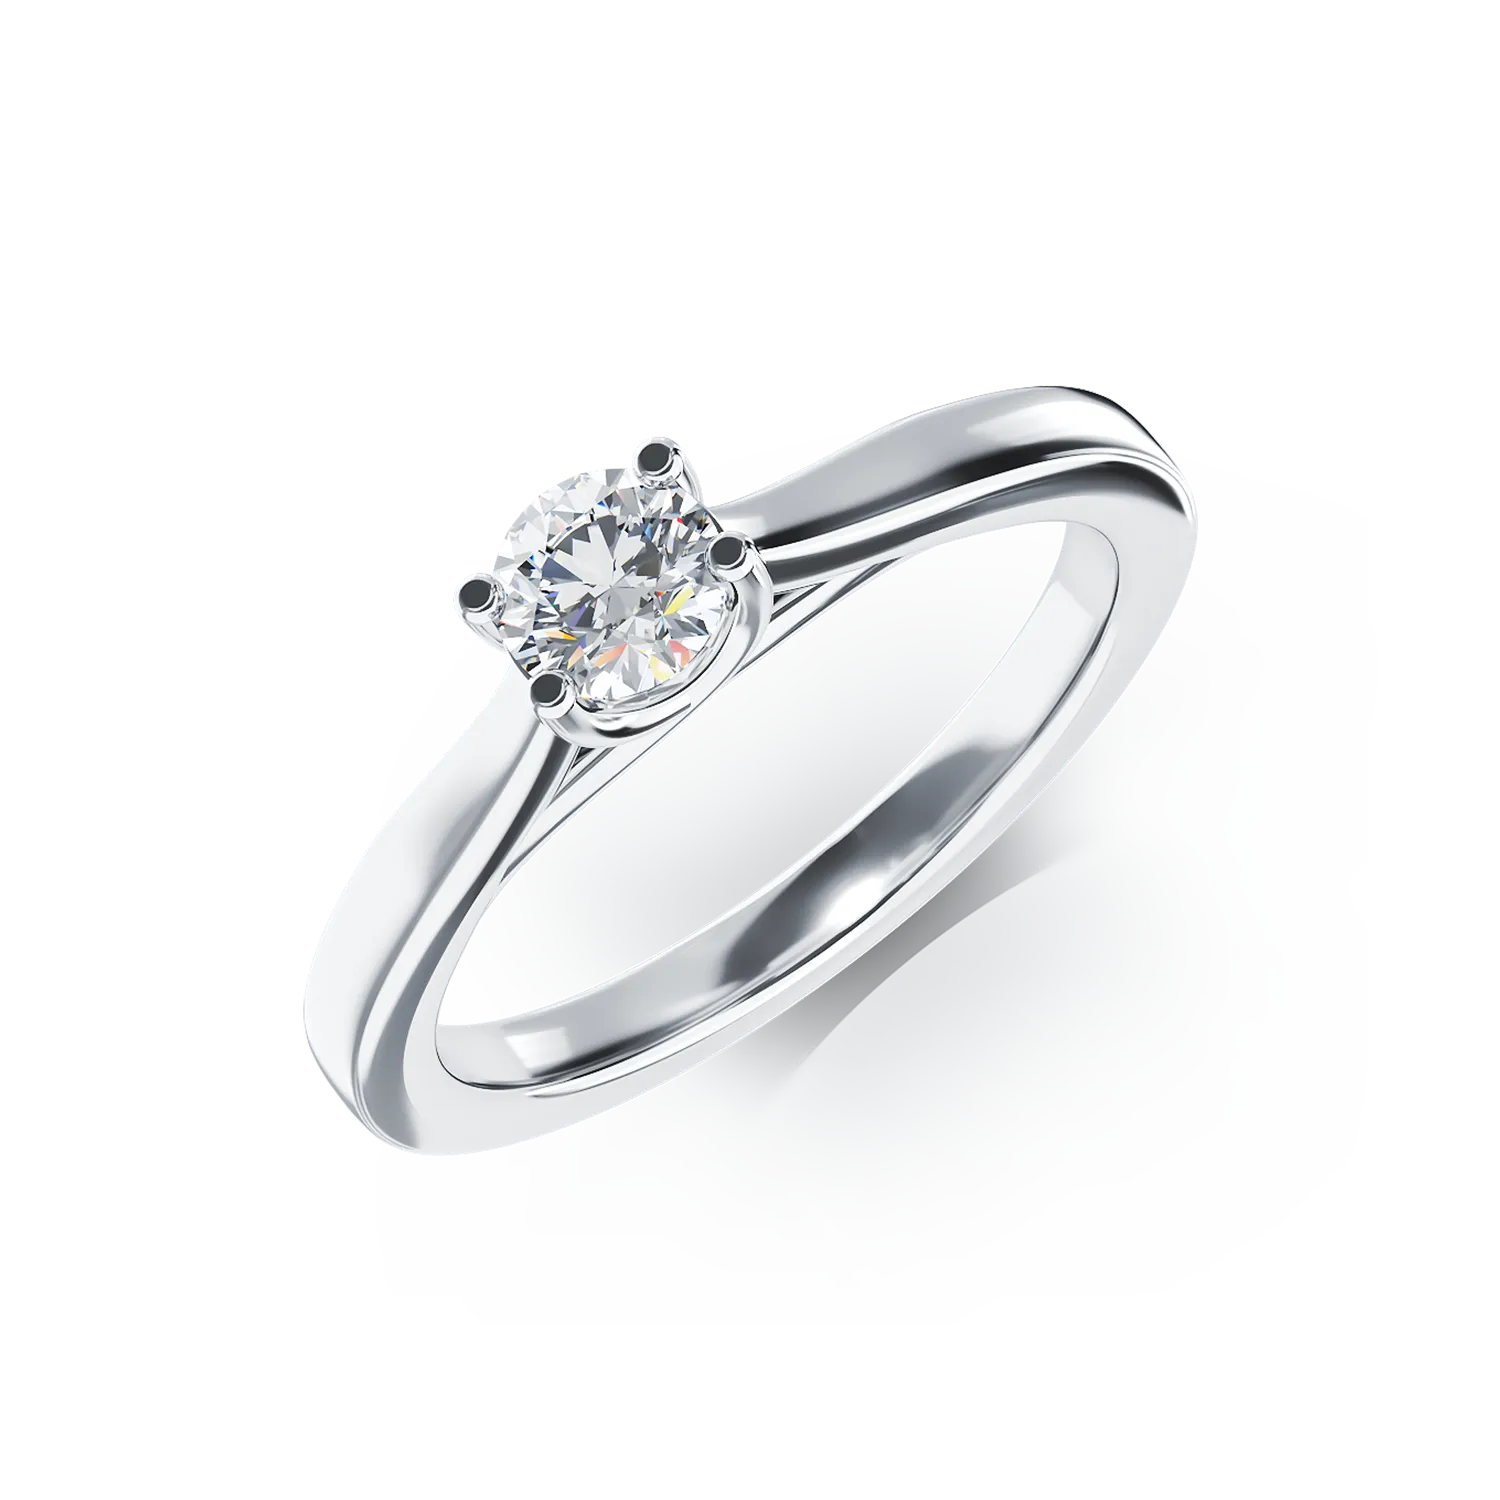 Inel de logodna din aur alb de 18K cu un diamant solitaire de 0.34ct